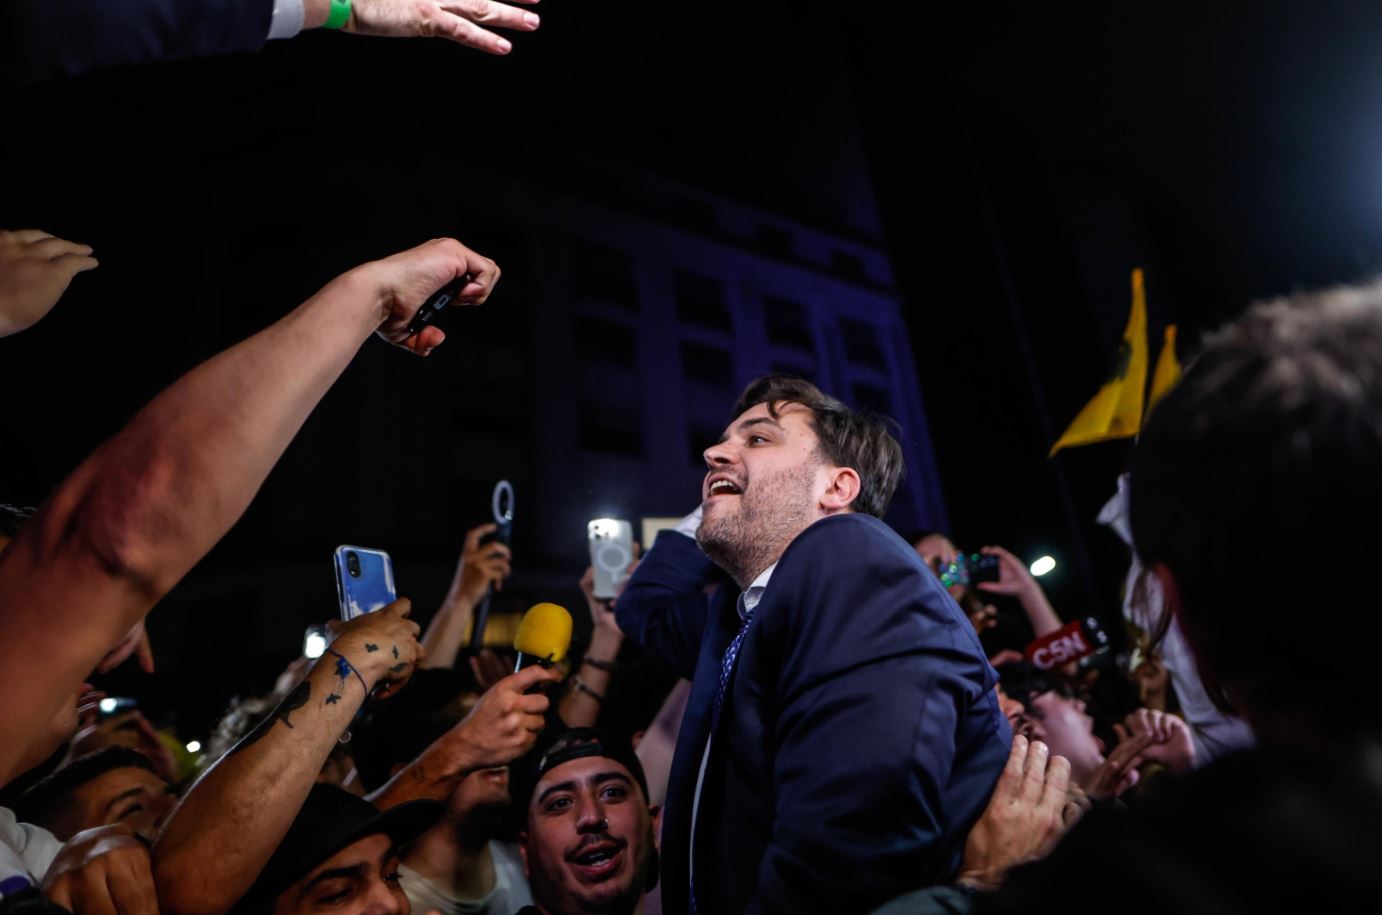 Ramiro Marra, candidato capo del governo per La Libertad Avanza, del candidato presidenziale argentino Javier Milei, saluta i sostenitori